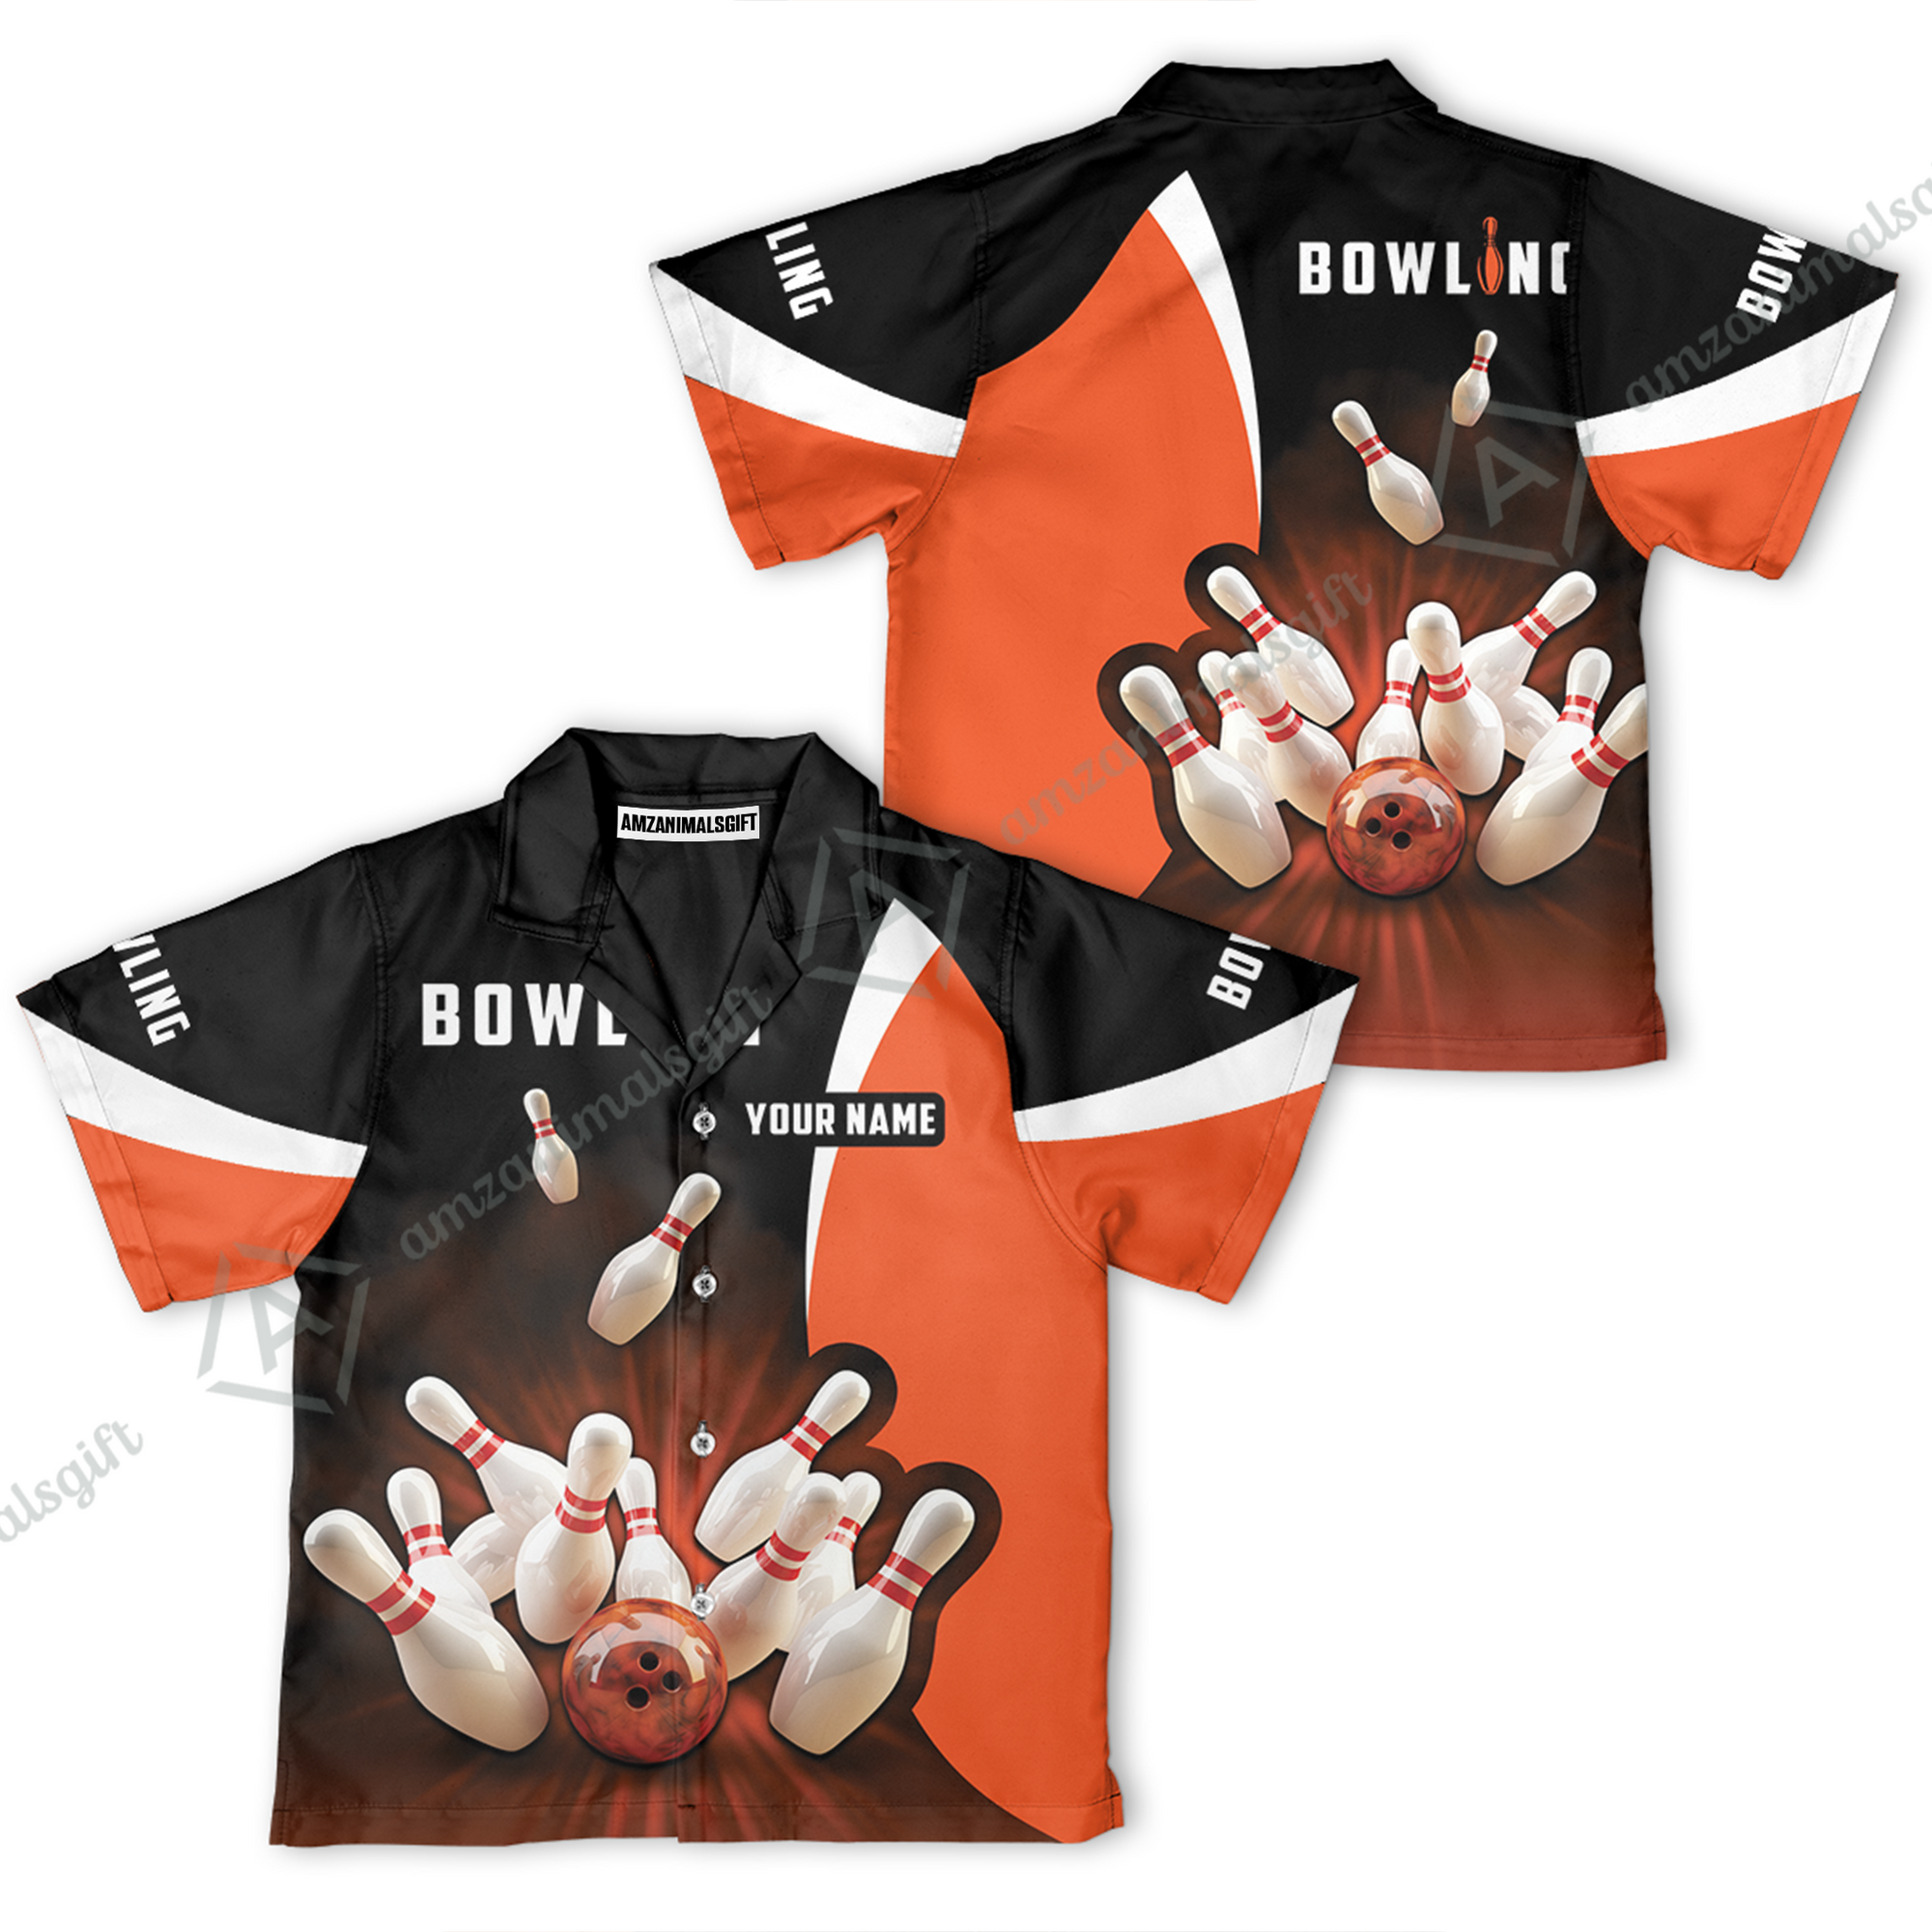 Customized Bowling Kid Youth Hawaiian Aloha Shirt, Ten Pin Strike Bowling Orange Black Children's Shirt For Son, Daughter, Family